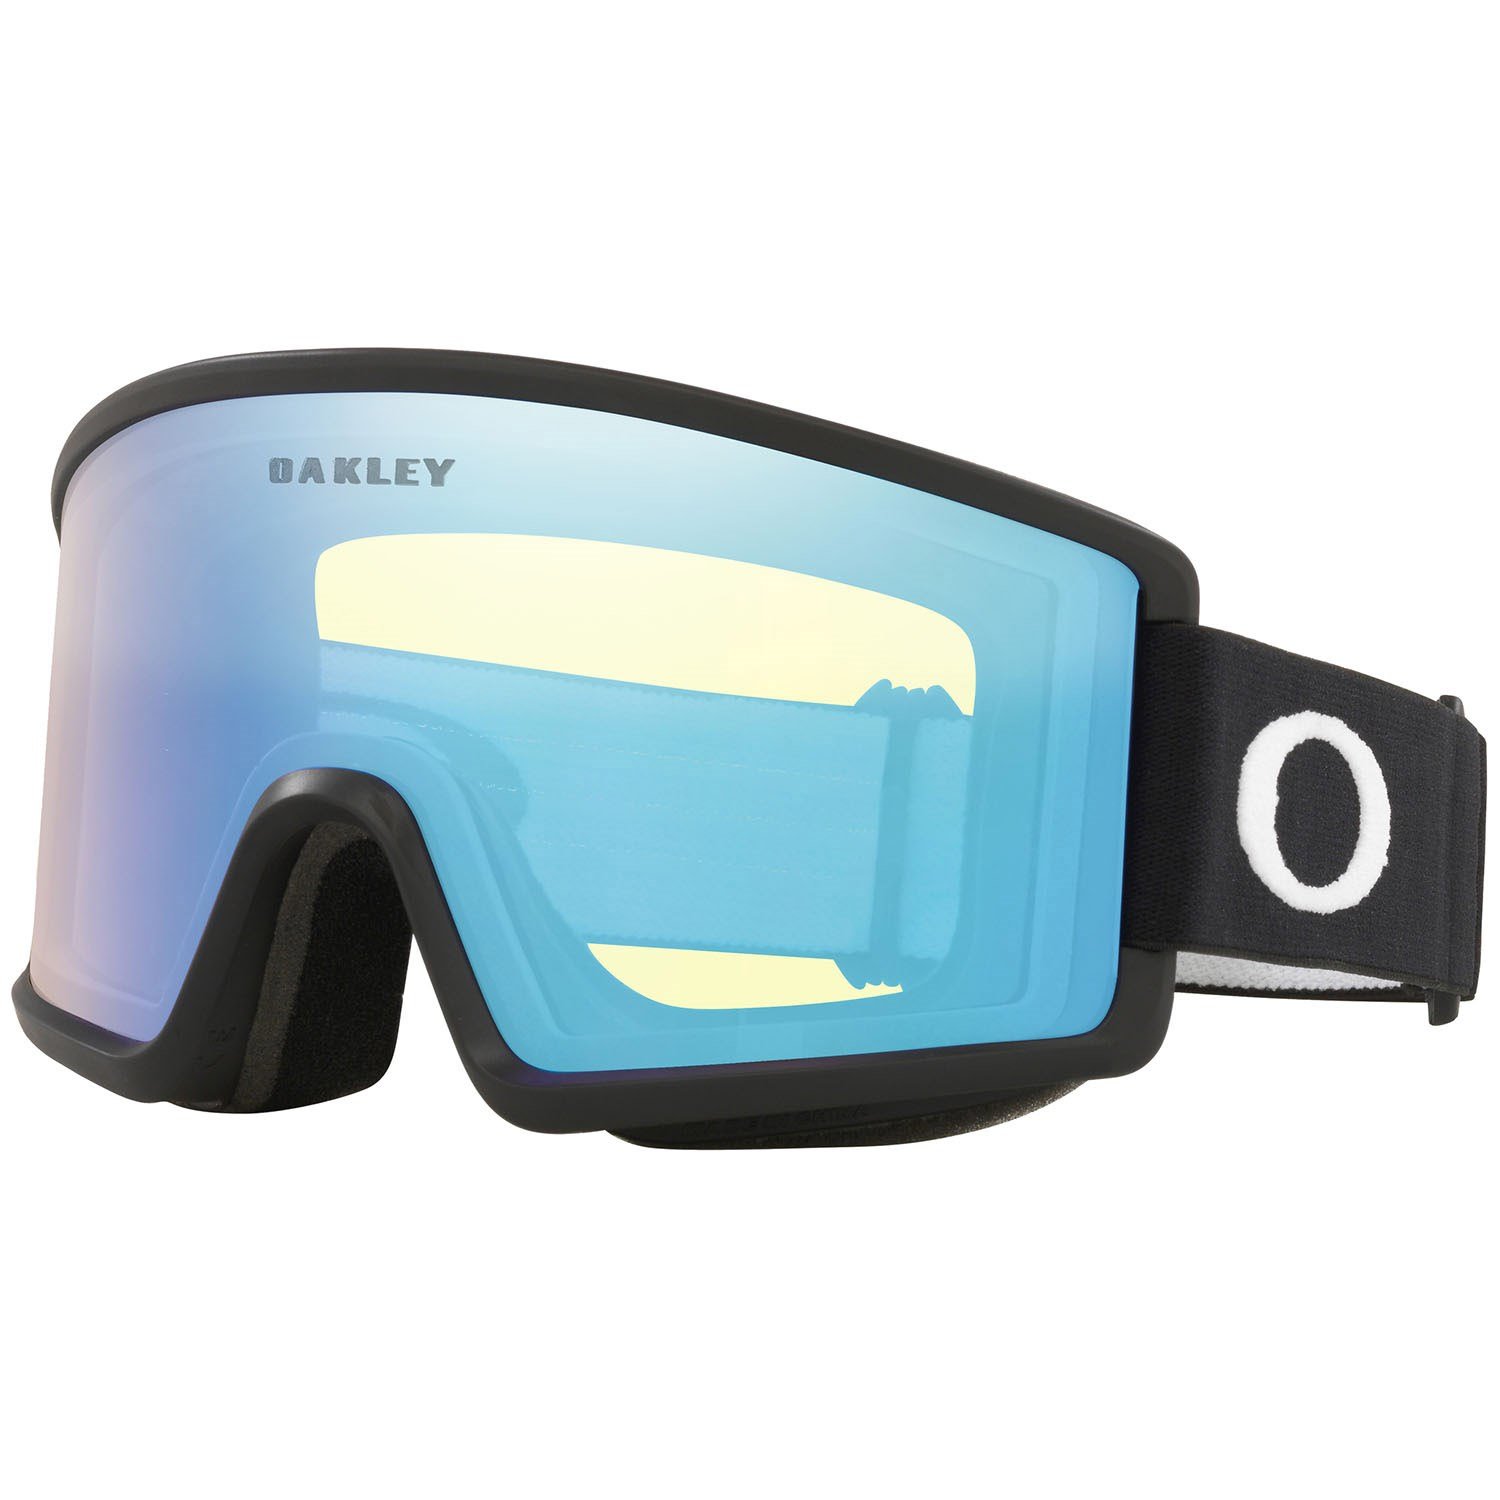 Защитные очки Oakley Target Line M, черный